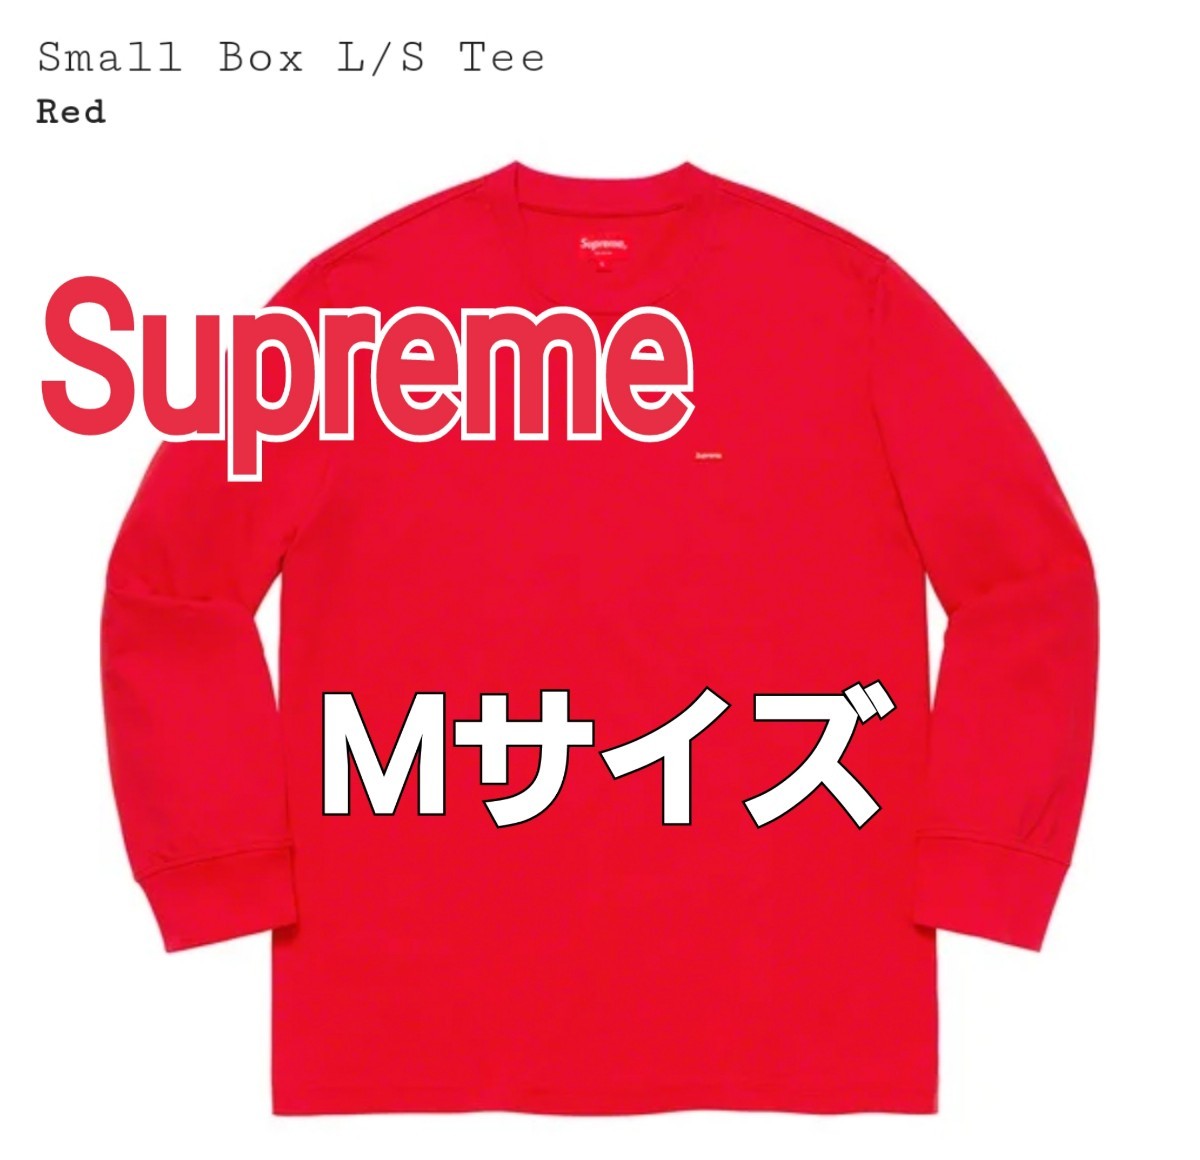 Supreme Small Box L/S Tee Medium Mサイズ Red レッド 赤